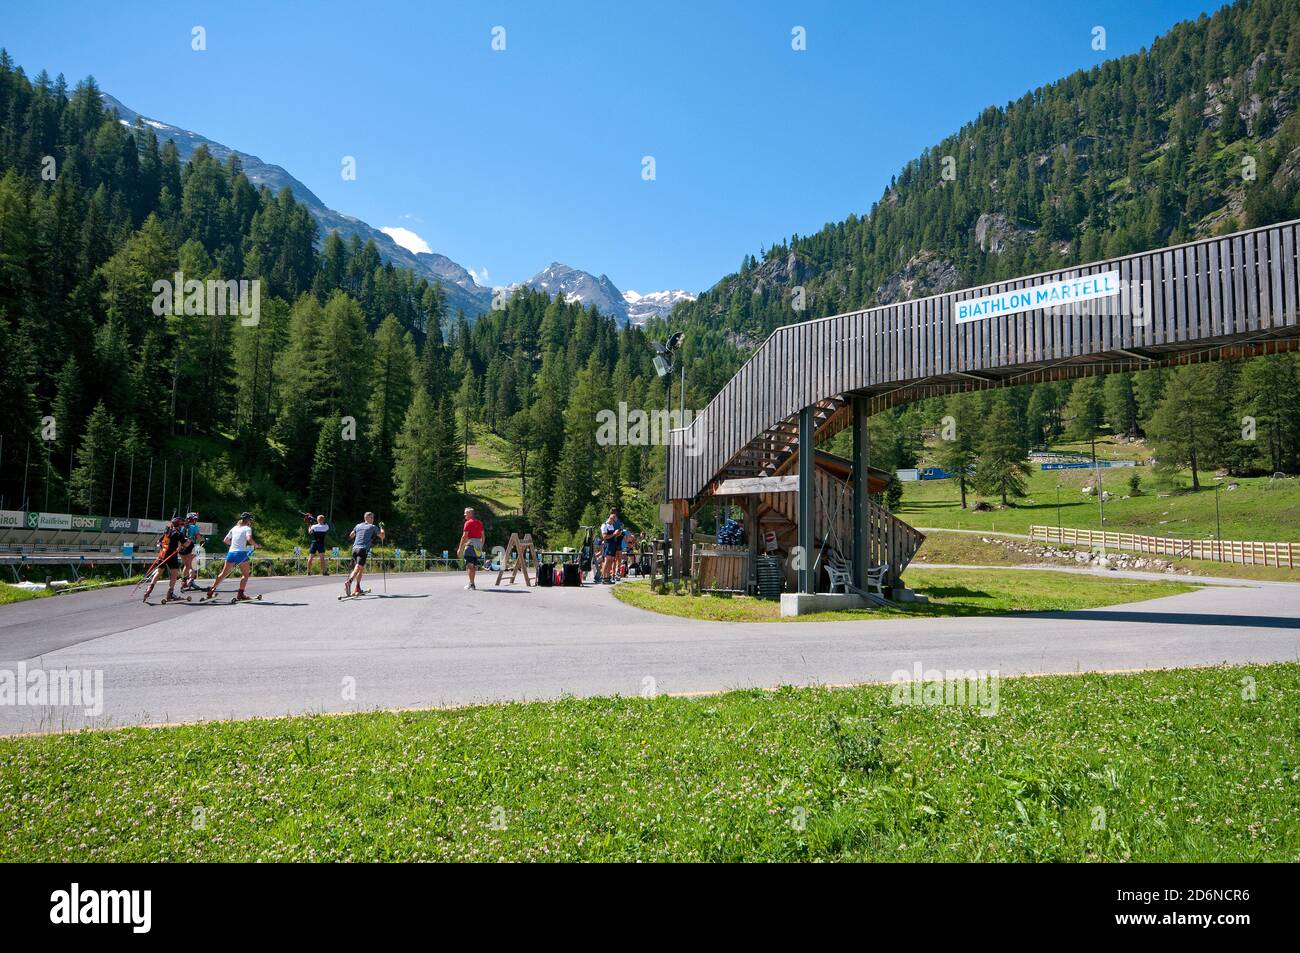 Entrenamiento de verano en el Centro de Biatlón Martell, Valle Martelltal, Bolzano, Trentino Alto Adige, Italia Foto de stock